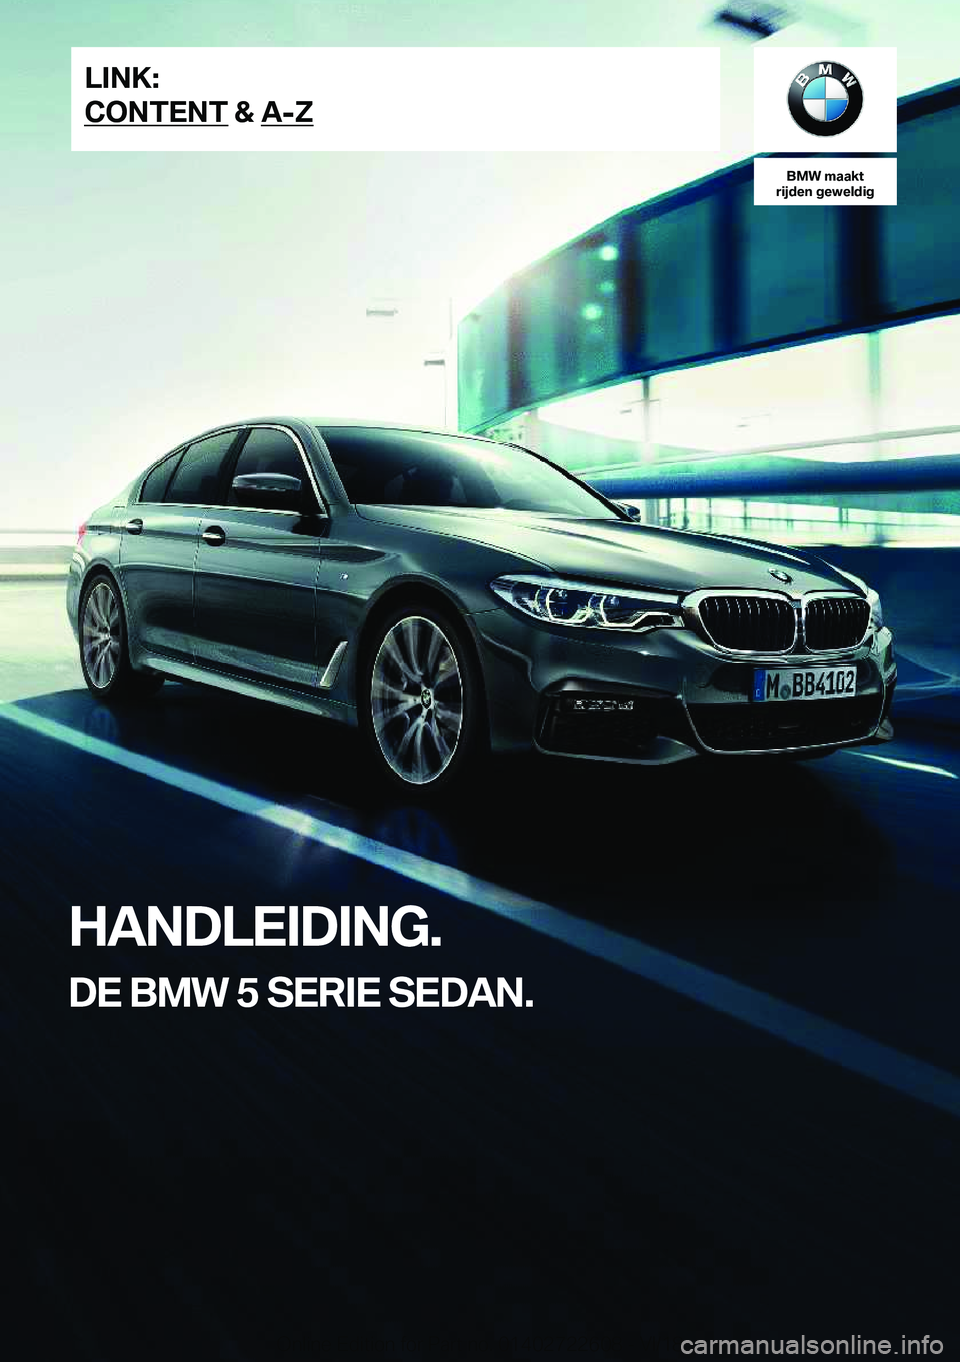 BMW 5 SERIES 2019  Instructieboekjes (in Dutch) �B�M�W��m�a�a�k�t
�r�i�j�d�e�n��g�e�w�e�l�d�i�g
�H�A�N�D�L�E�I�D�I�N�G�.
�D�E��B�M�W��5��S�E�R�I�E��S�E�D�A�N�.�L�I�N�K�:
�C�O�N�T�E�N�T��&��A�-�Z�O�n�l�i�n�e��E�d�i�t�i�o�n��f�o�r��P�a�r�t